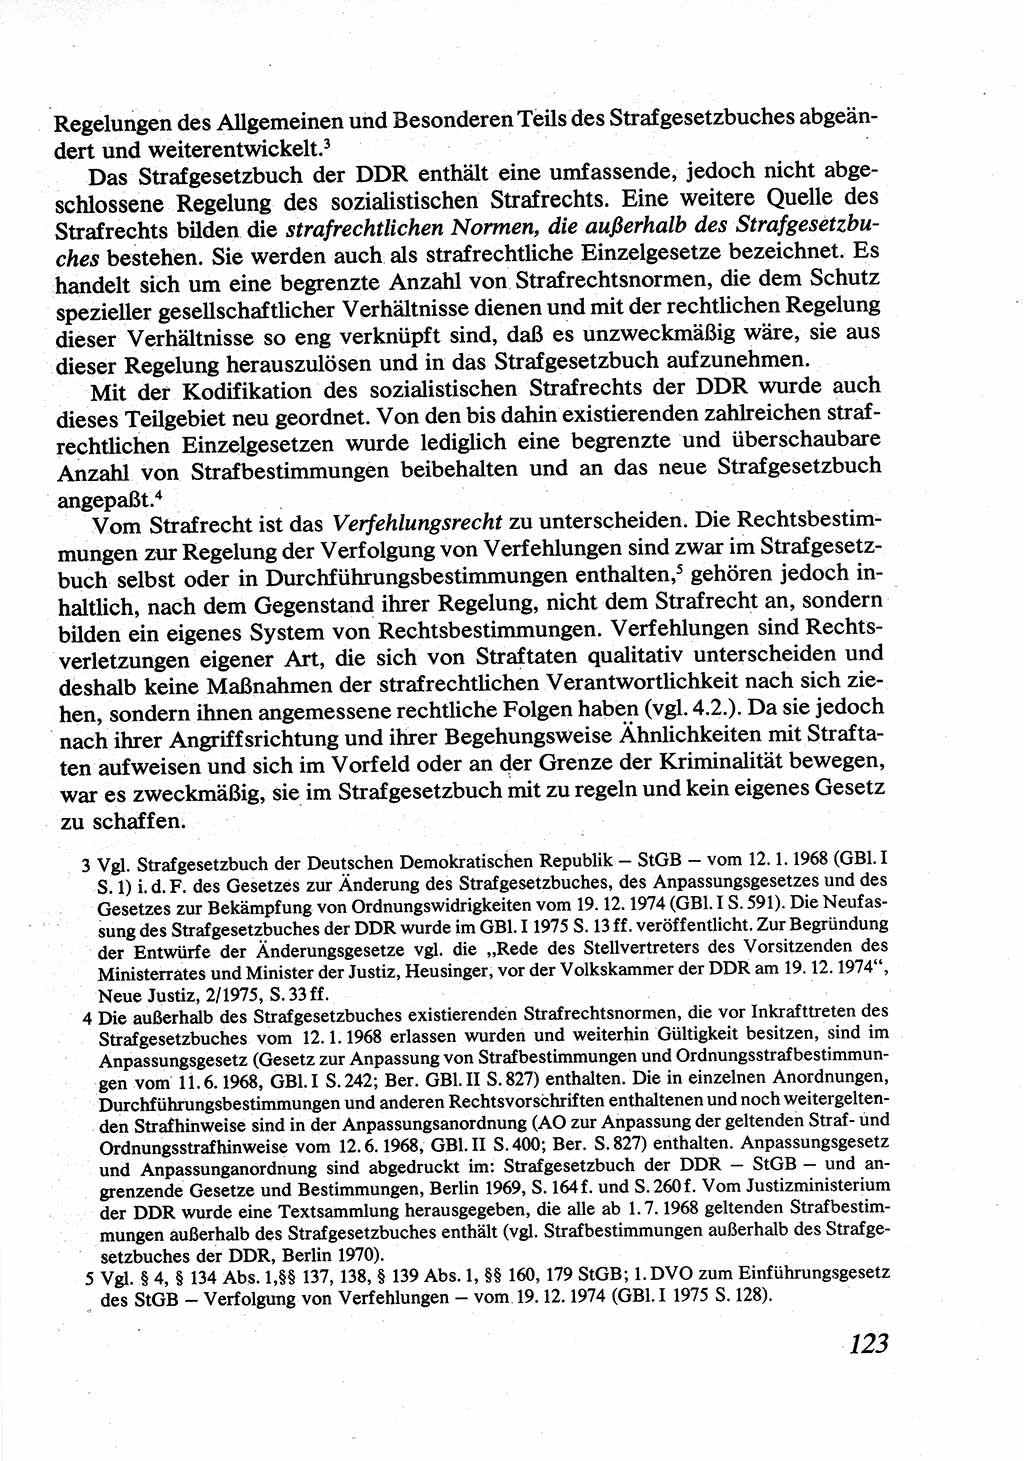 Strafrecht [Deutsche Demokratische Republik (DDR)], Allgemeiner Teil, Lehrbuch 1976, Seite 123 (Strafr. DDR AT Lb. 1976, S. 123)